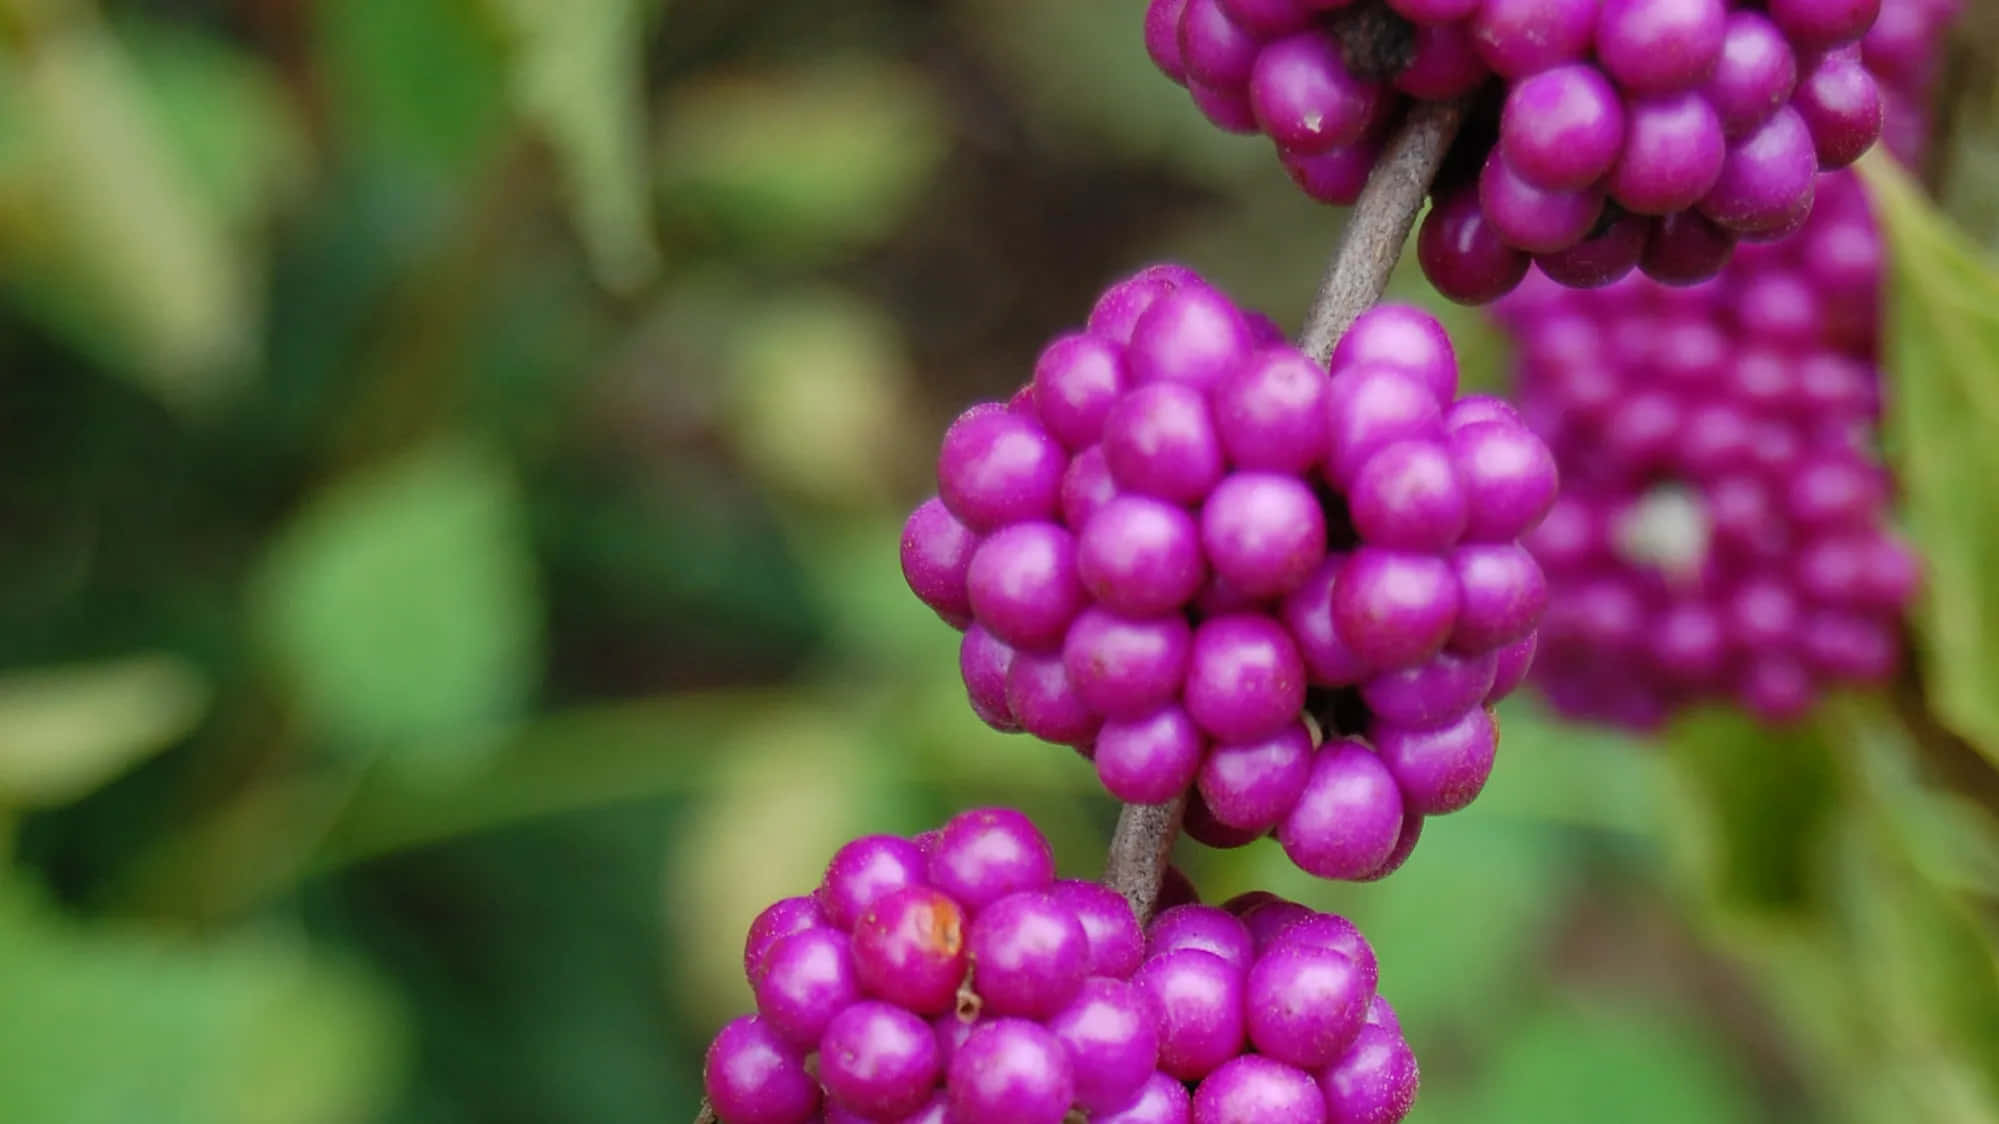 Enjoy a handful of plump, juicy purple berries Wallpaper